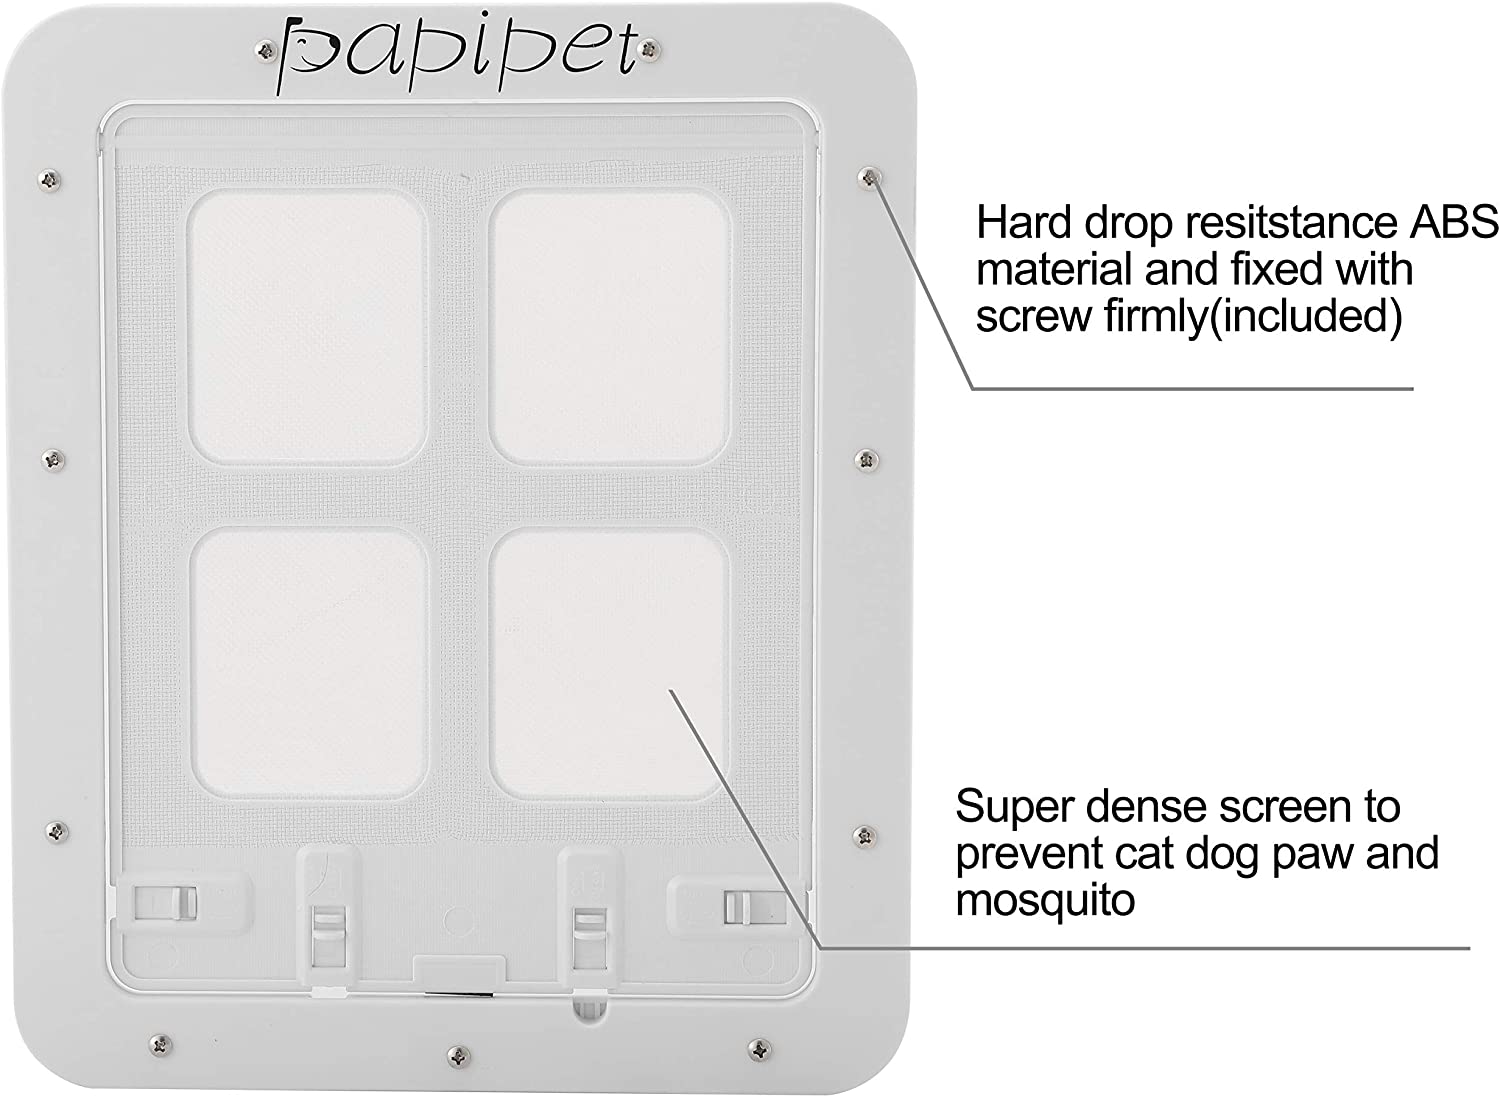  درب سگ/گربه پاپیپت دارای فلپ مغناطیسی است. پانل درب به طور خودکار پس از عبور از در بسته می شود.